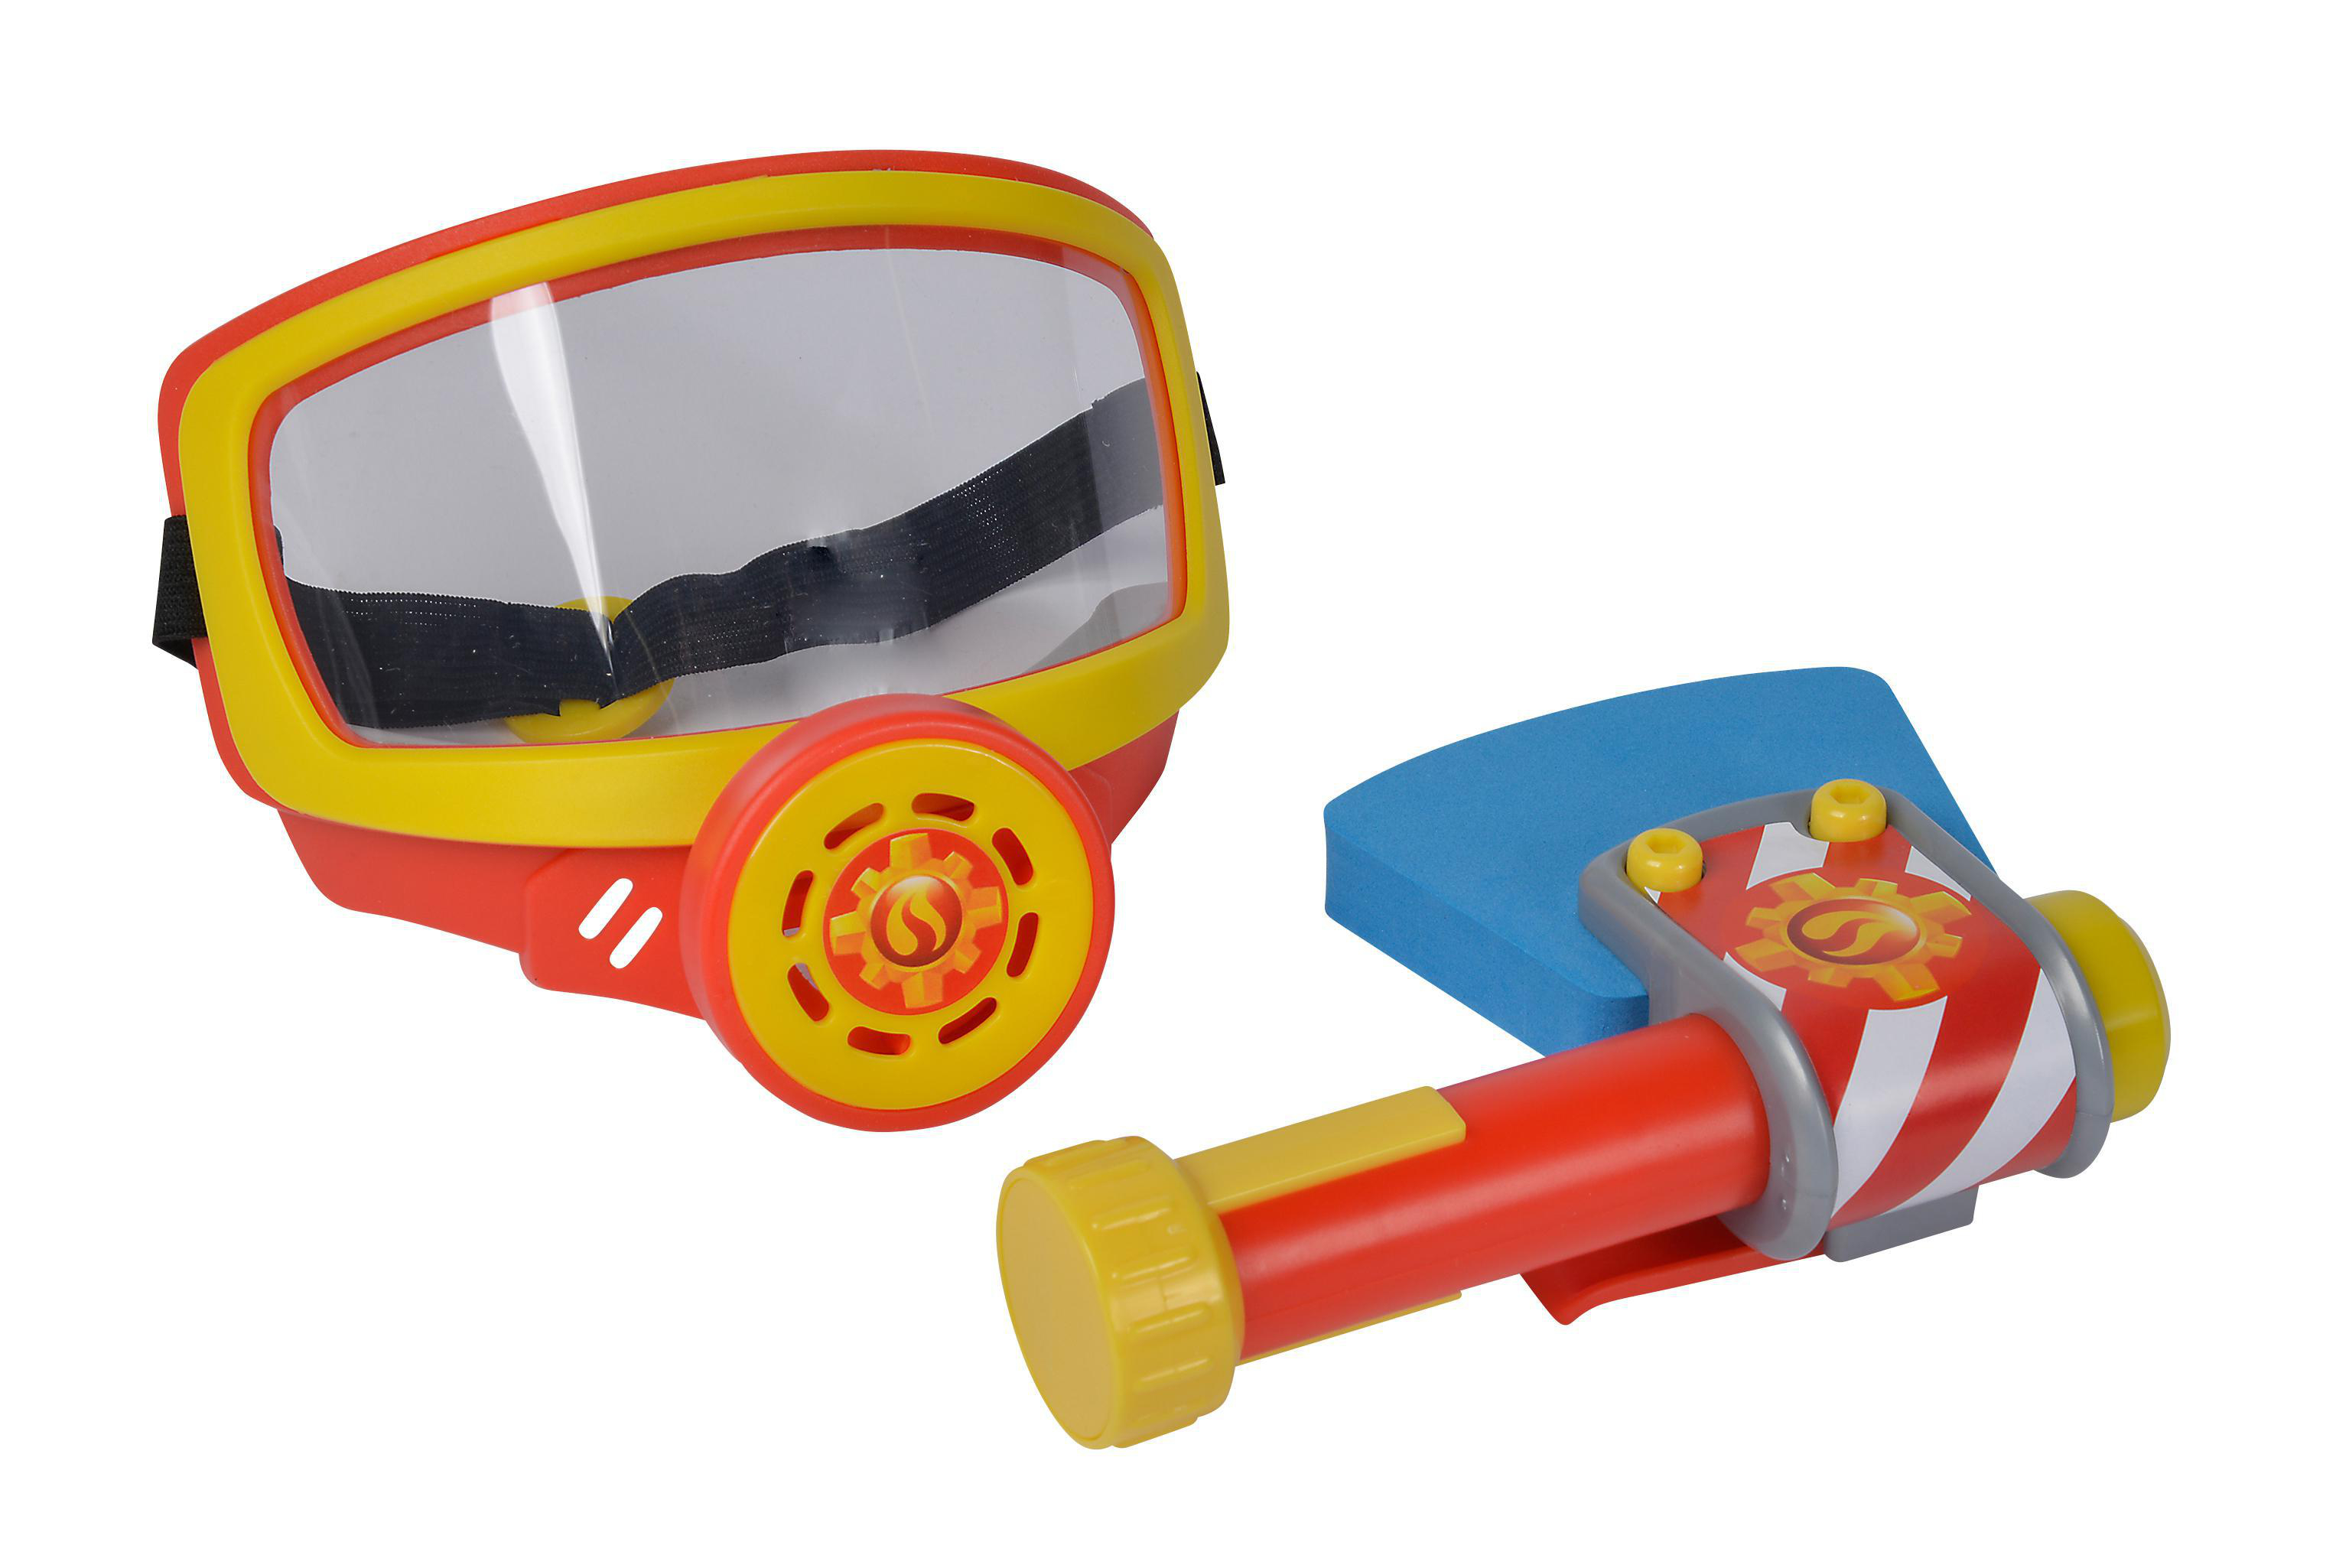 Feuerwehrmann Rollenspielzeug, Sam TOYS Mehrfarbig Sauerstoffmaske SIMBA